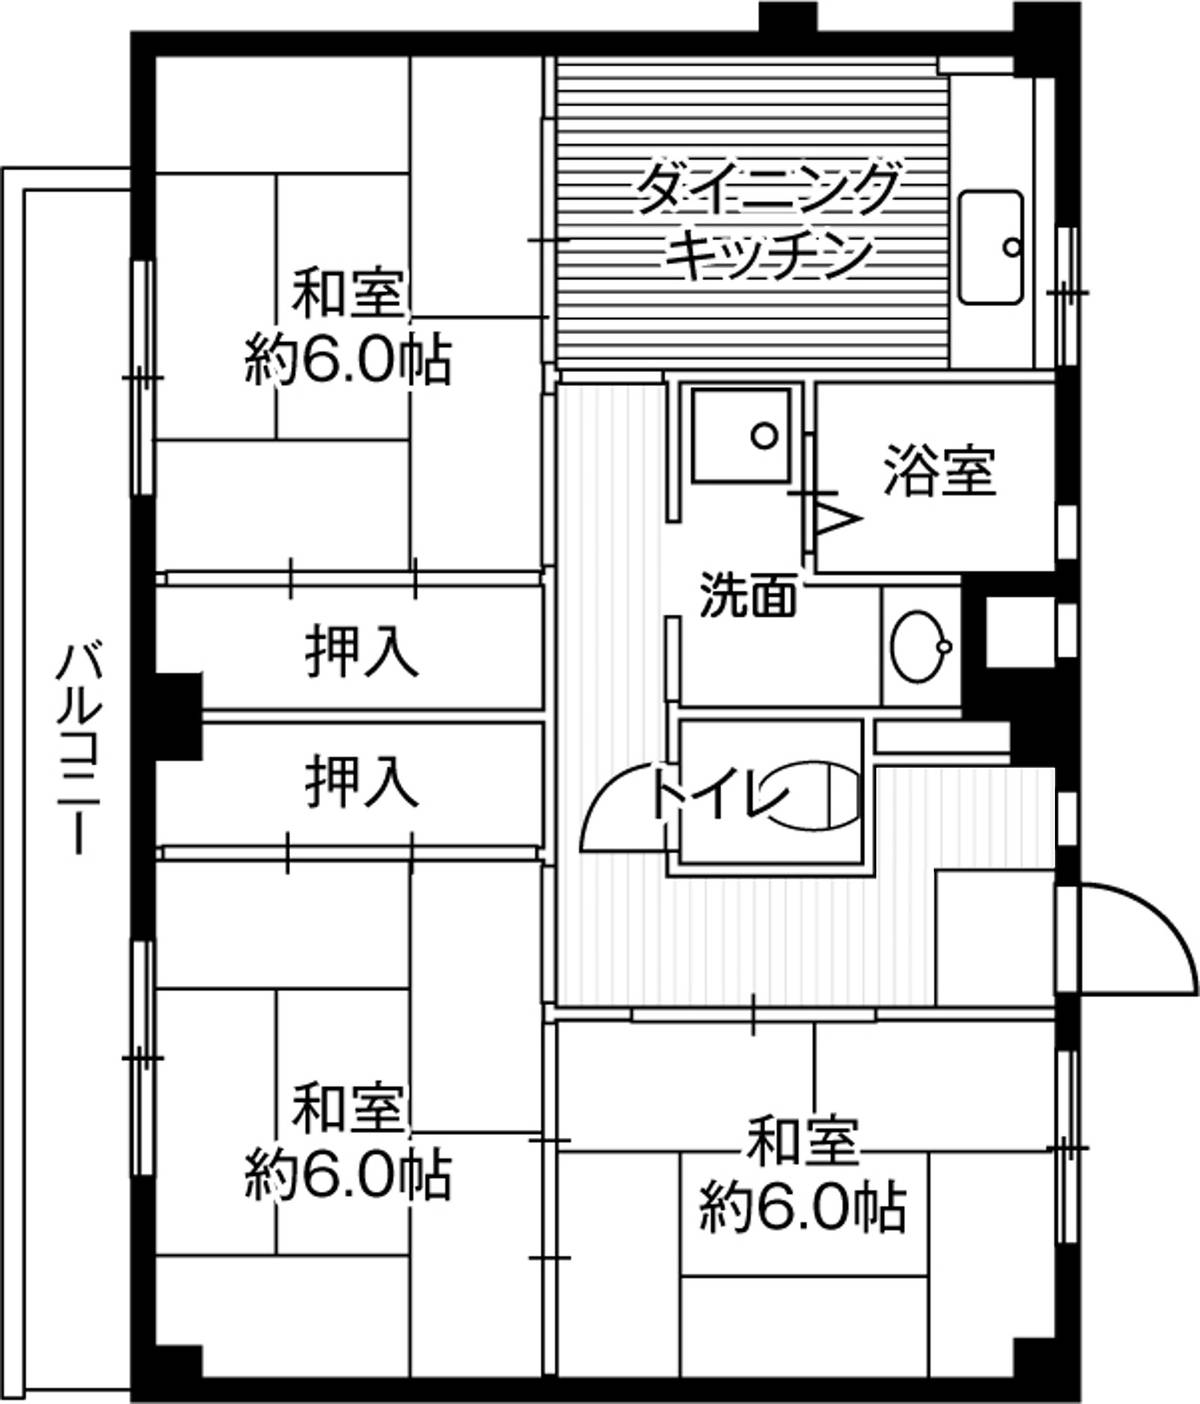 位于松戸市的Village House 串崎的平面图3DK